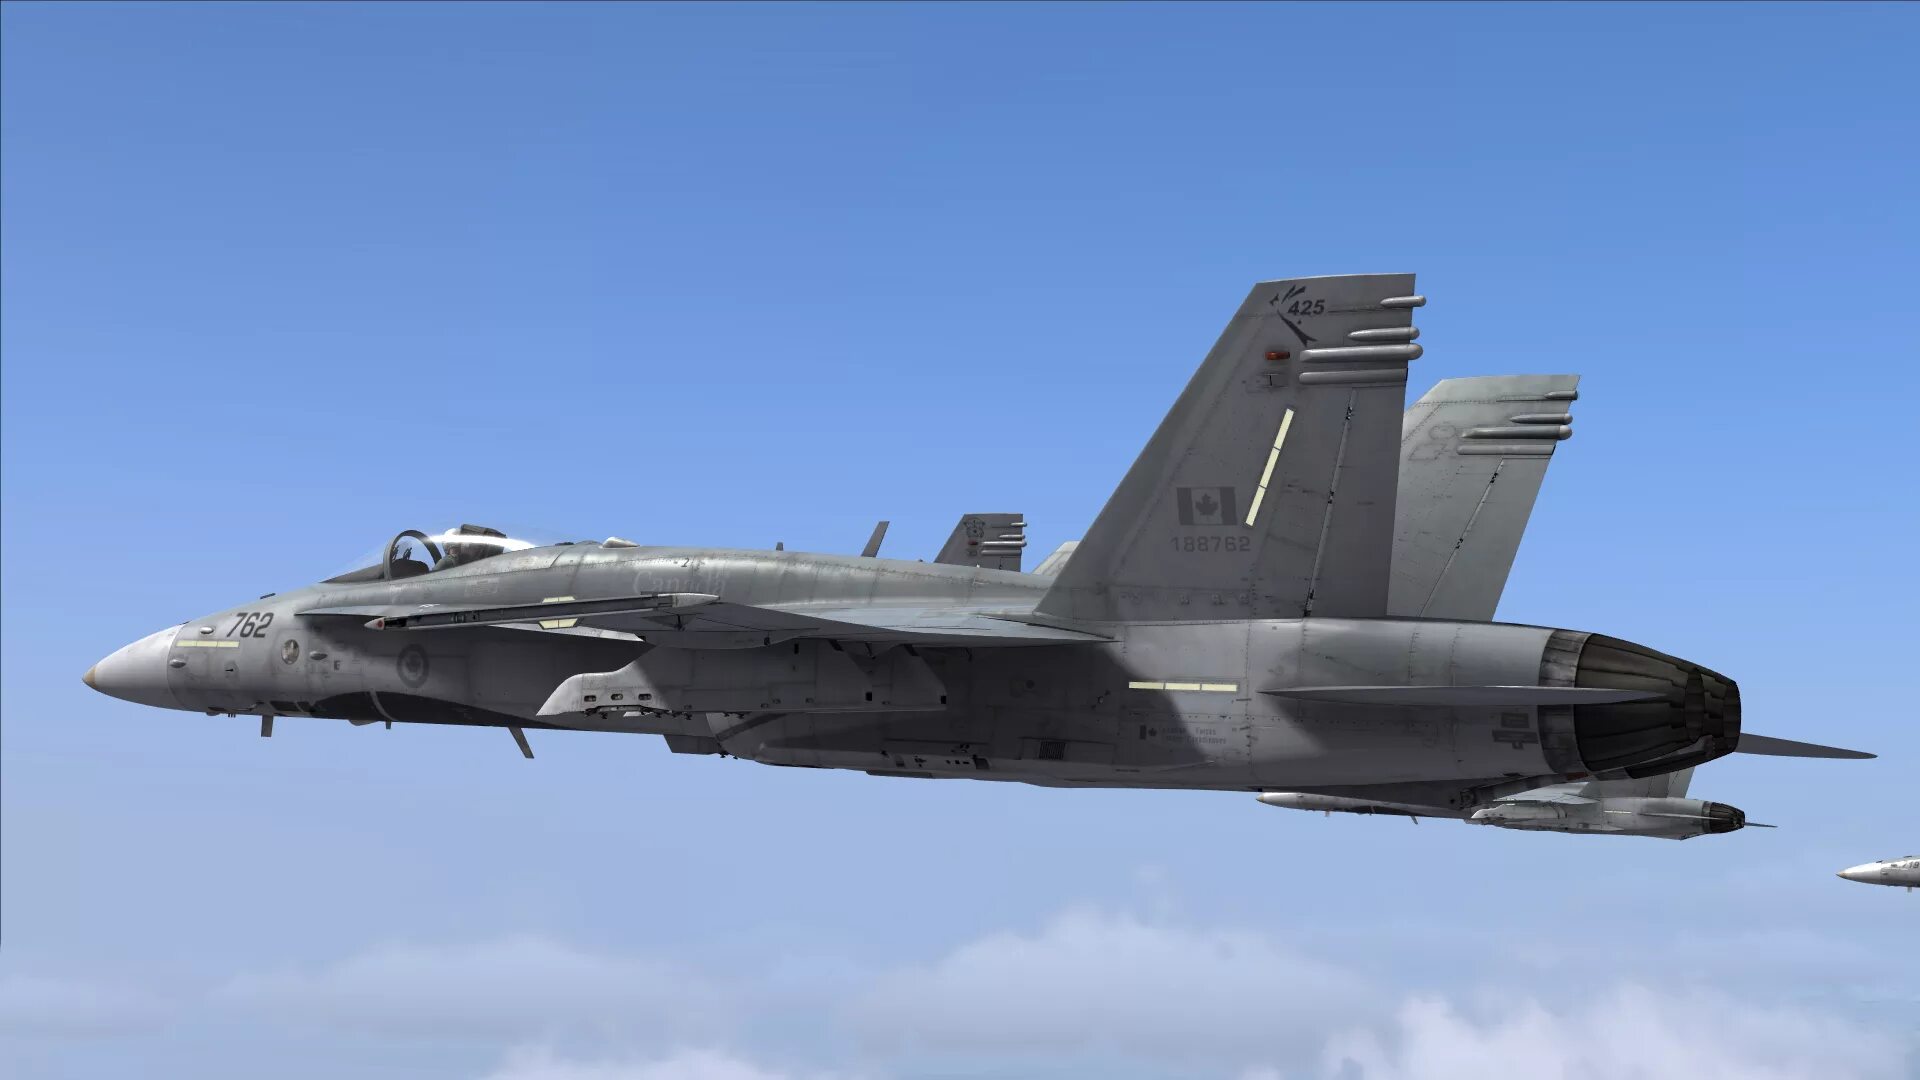 F 18 ru. F-18a/c Hornet. F 18 истребитель. F-18 Хорнет двигатель. F-18 Hornet воздухозаборники.